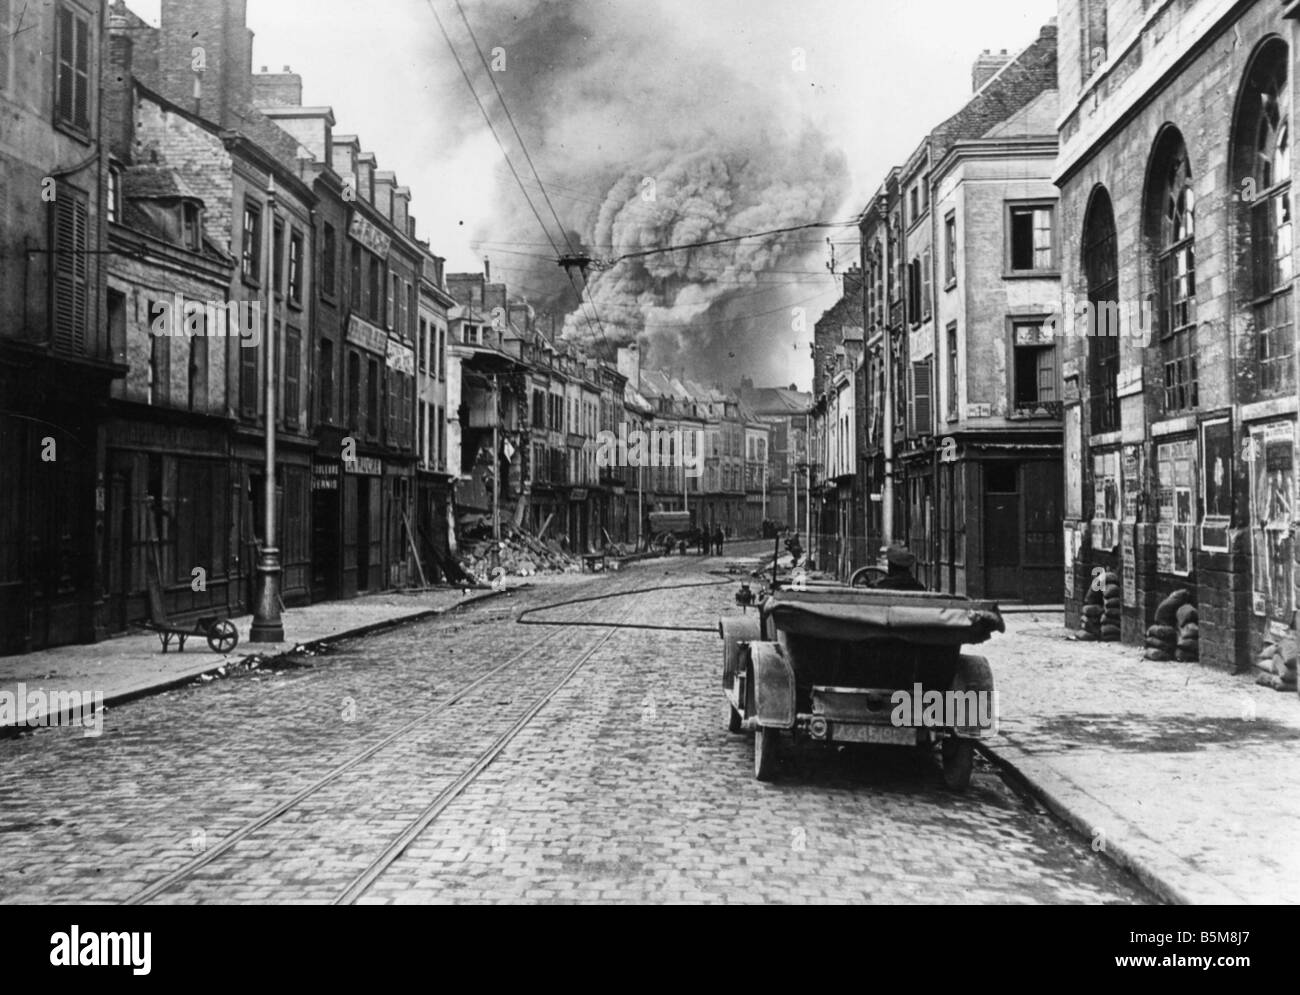 2 G55 F1 1918 9 Bombardement von Amiens WWI 1918 Geschichte Weltkrieg ich Frankreich Schlacht von Amiens März April 1918 Feuer in einem Bezirk Stockfoto